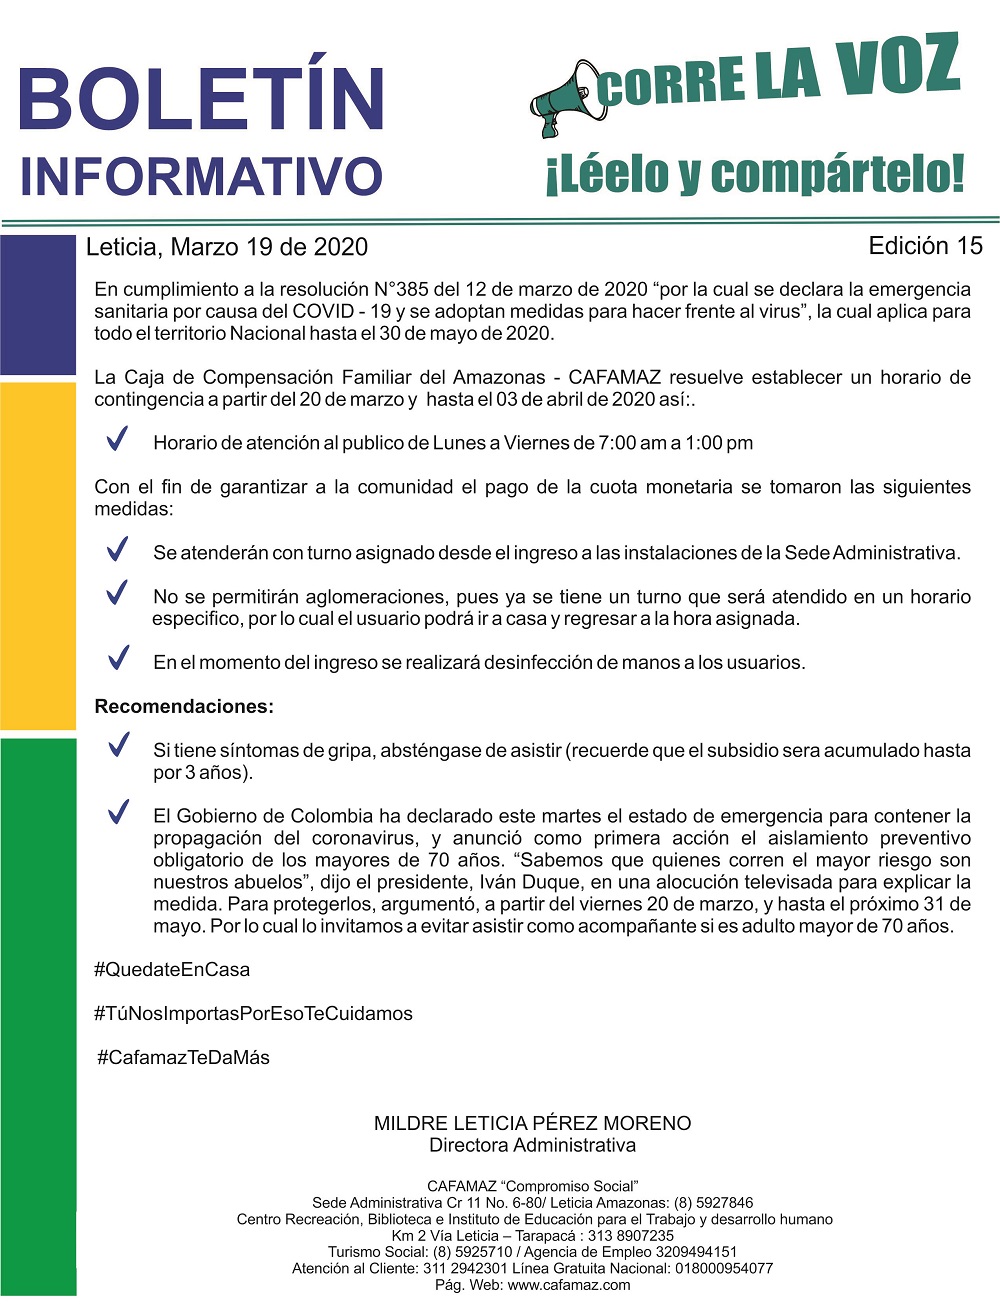 Boletín Informativo Edición 15 – HORARIO TEMPORAL, PAGOS SUBSIDIO | Cafamaz, 2020